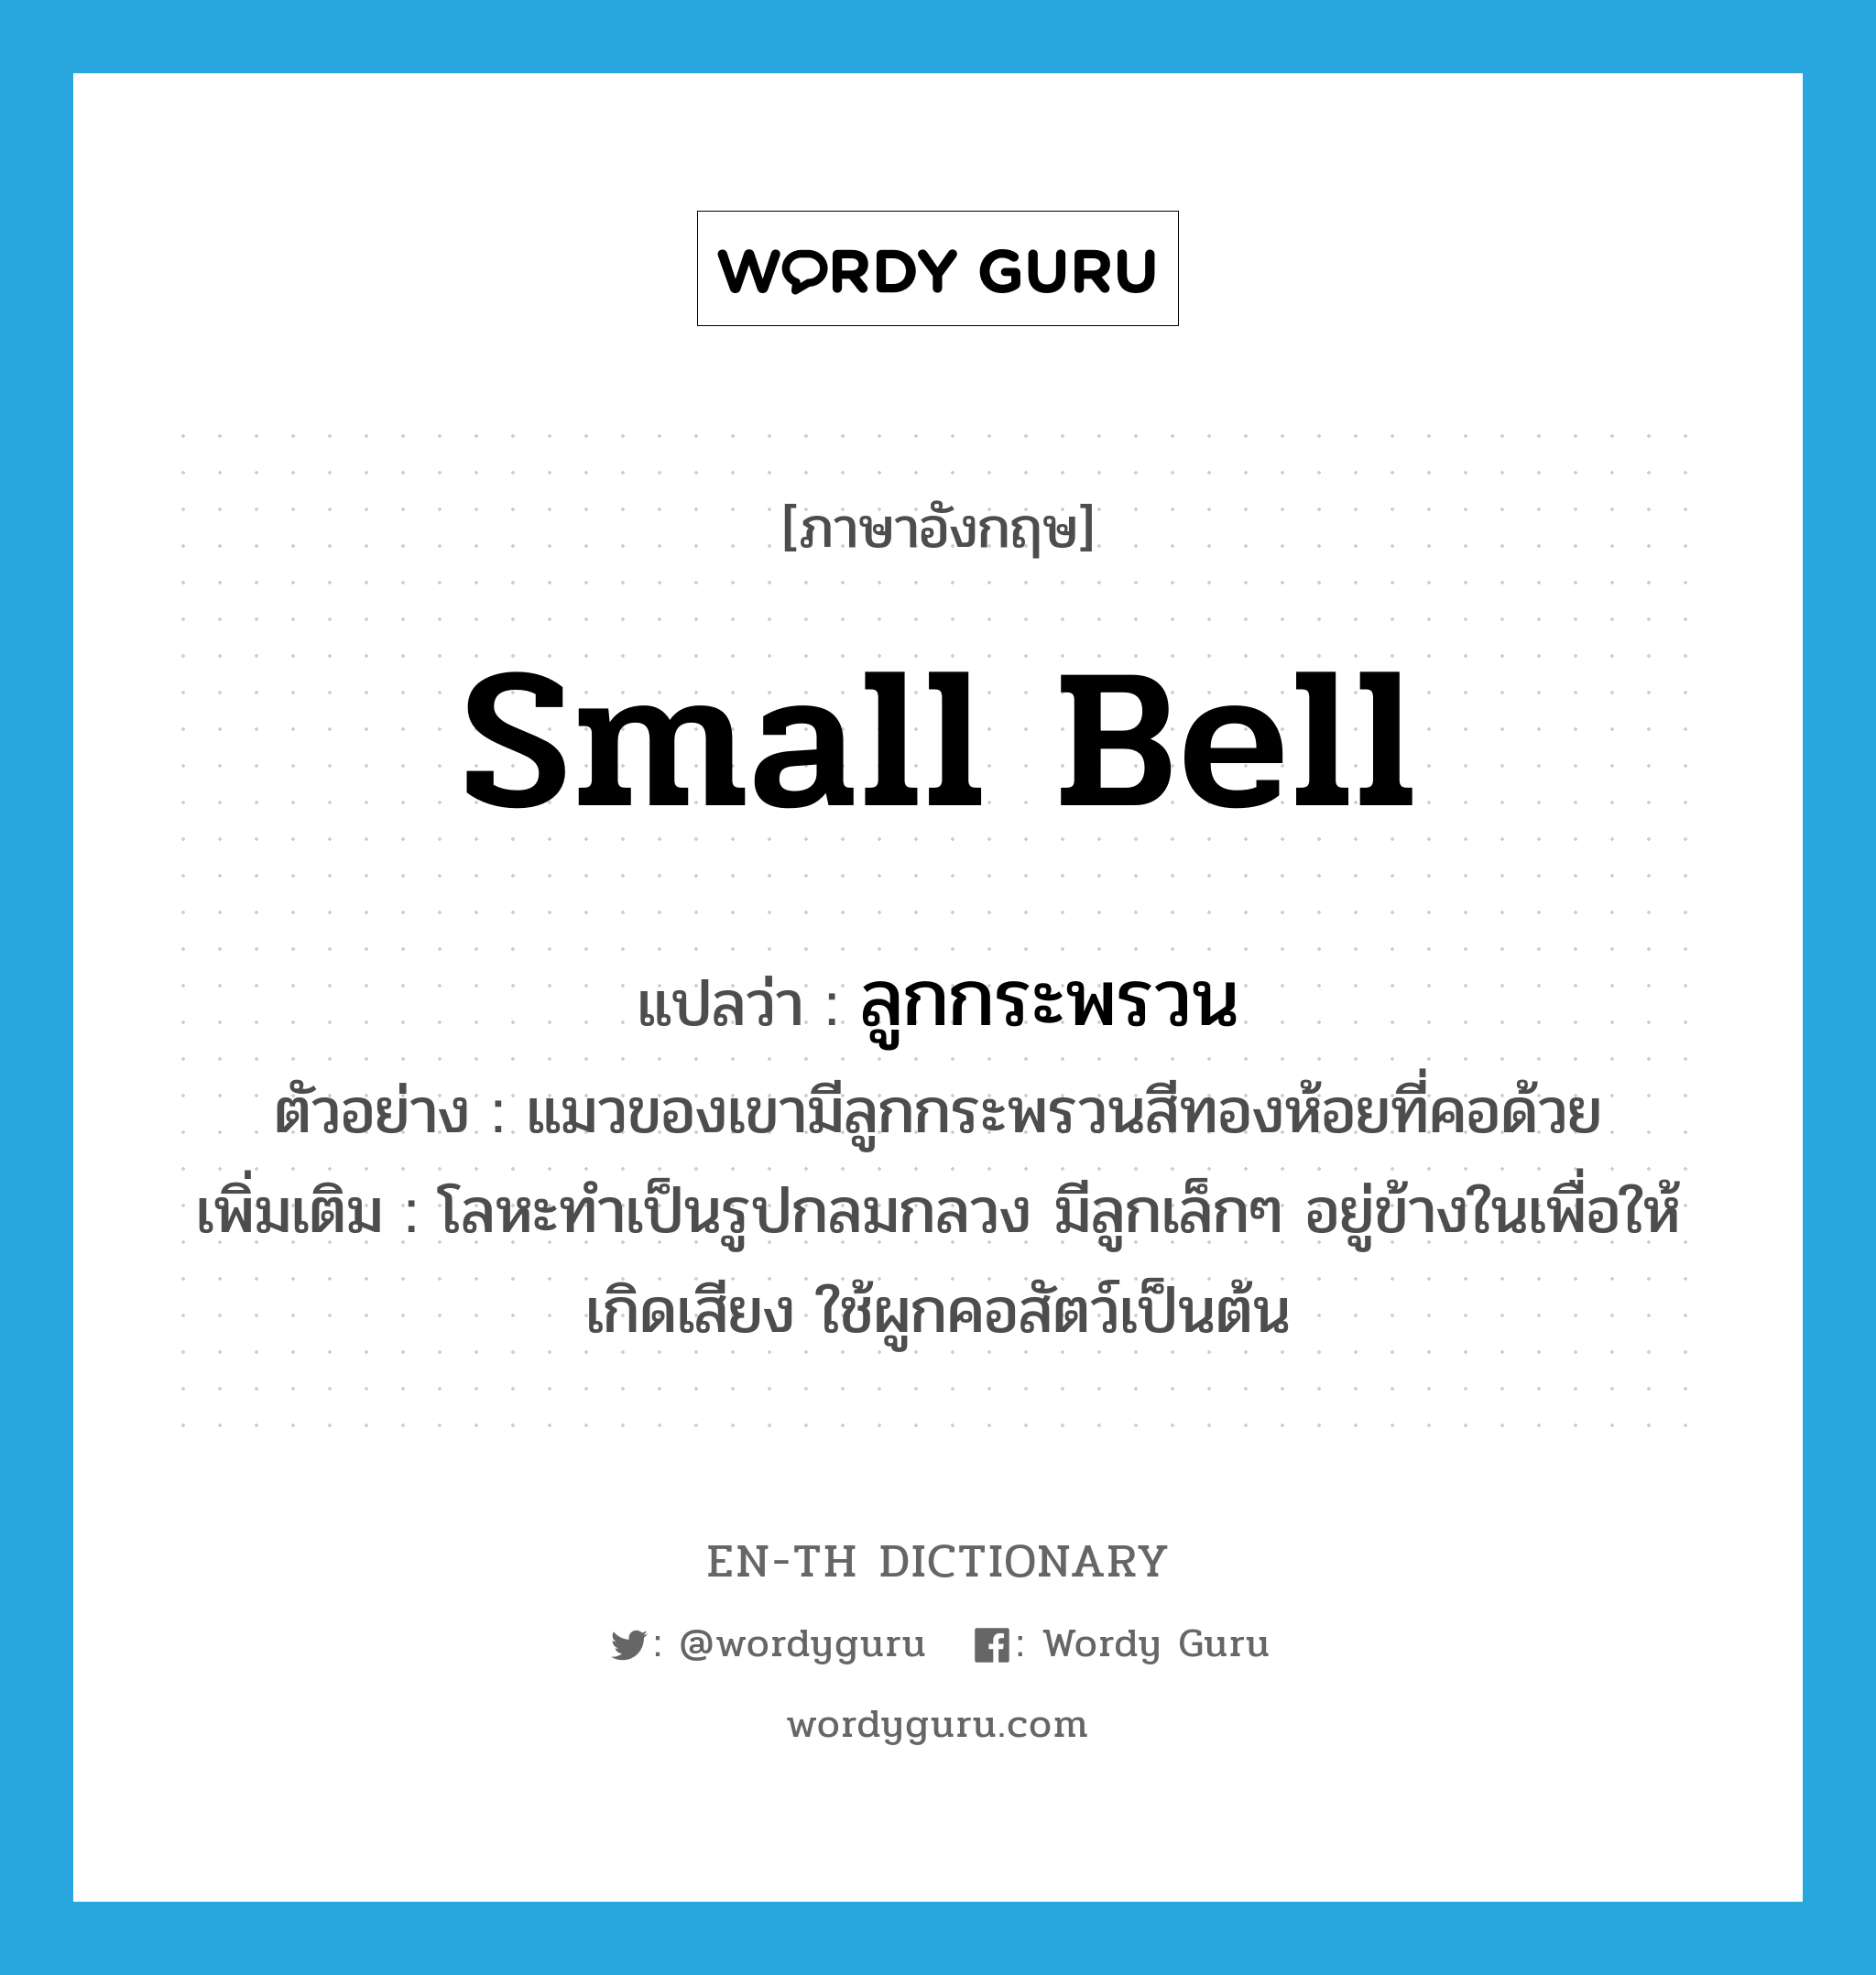 small bell แปลว่า?, คำศัพท์ภาษาอังกฤษ small bell แปลว่า ลูกกระพรวน ประเภท N ตัวอย่าง แมวของเขามีลูกกระพรวนสีทองห้อยที่คอด้วย เพิ่มเติม โลหะทำเป็นรูปกลมกลวง มีลูกเล็กๆ อยู่ข้างในเพื่อให้เกิดเสียง ใช้ผูกคอสัตว์เป็นต้น หมวด N